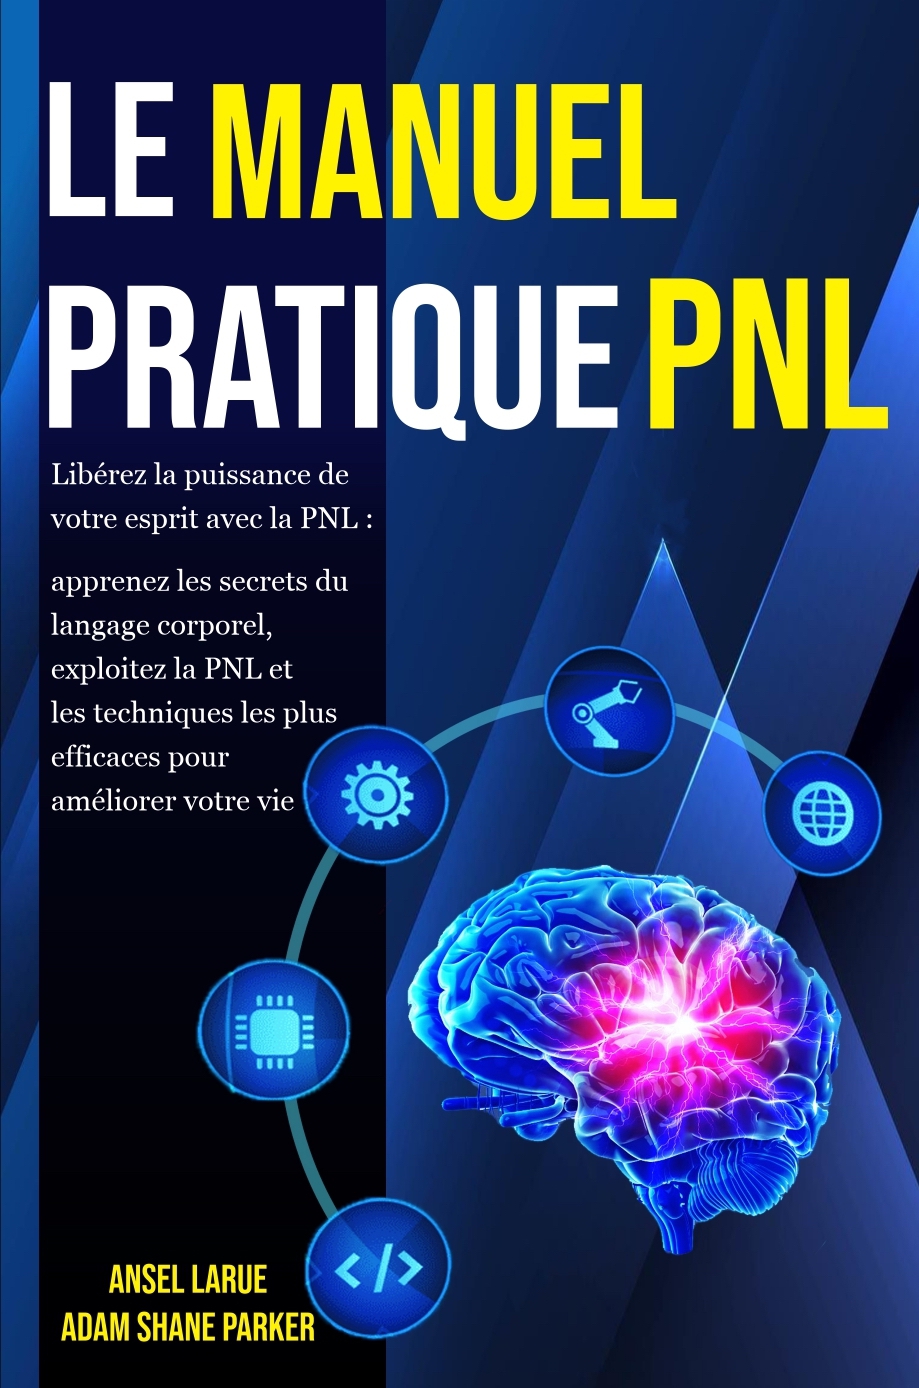 Le Manuel Pratique PNL – Adam Shane Parker, Ansel Larue